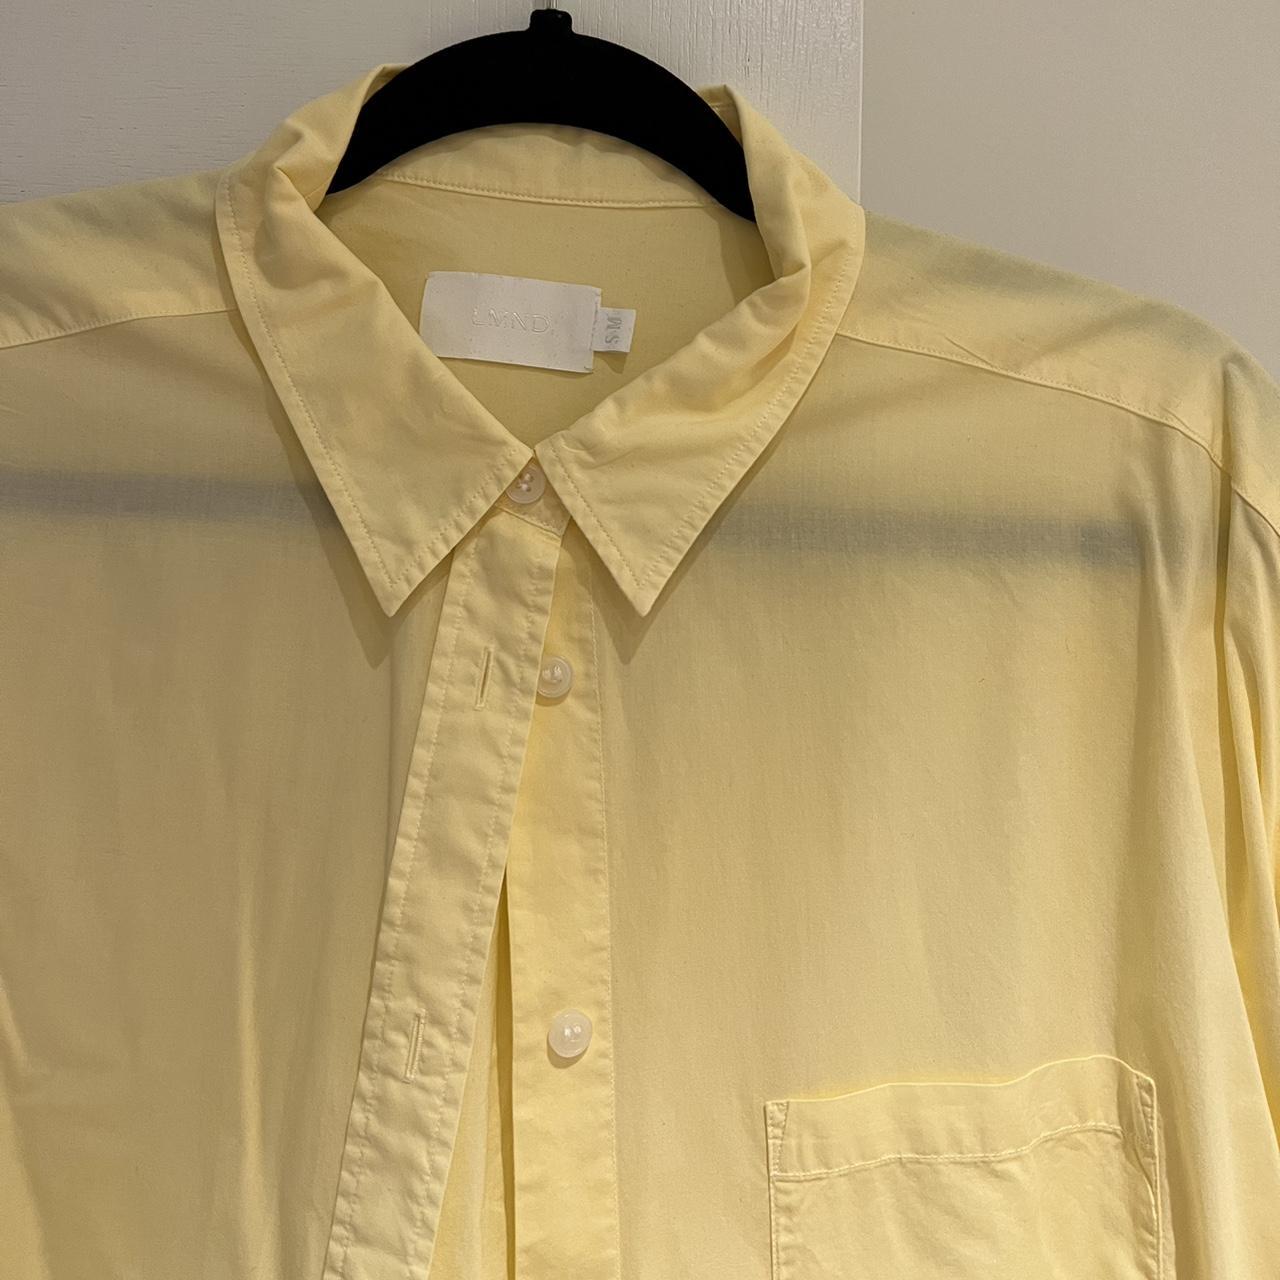 LMND The Chiara Shirt Dress - pale yellow (size S/M)... - Depop